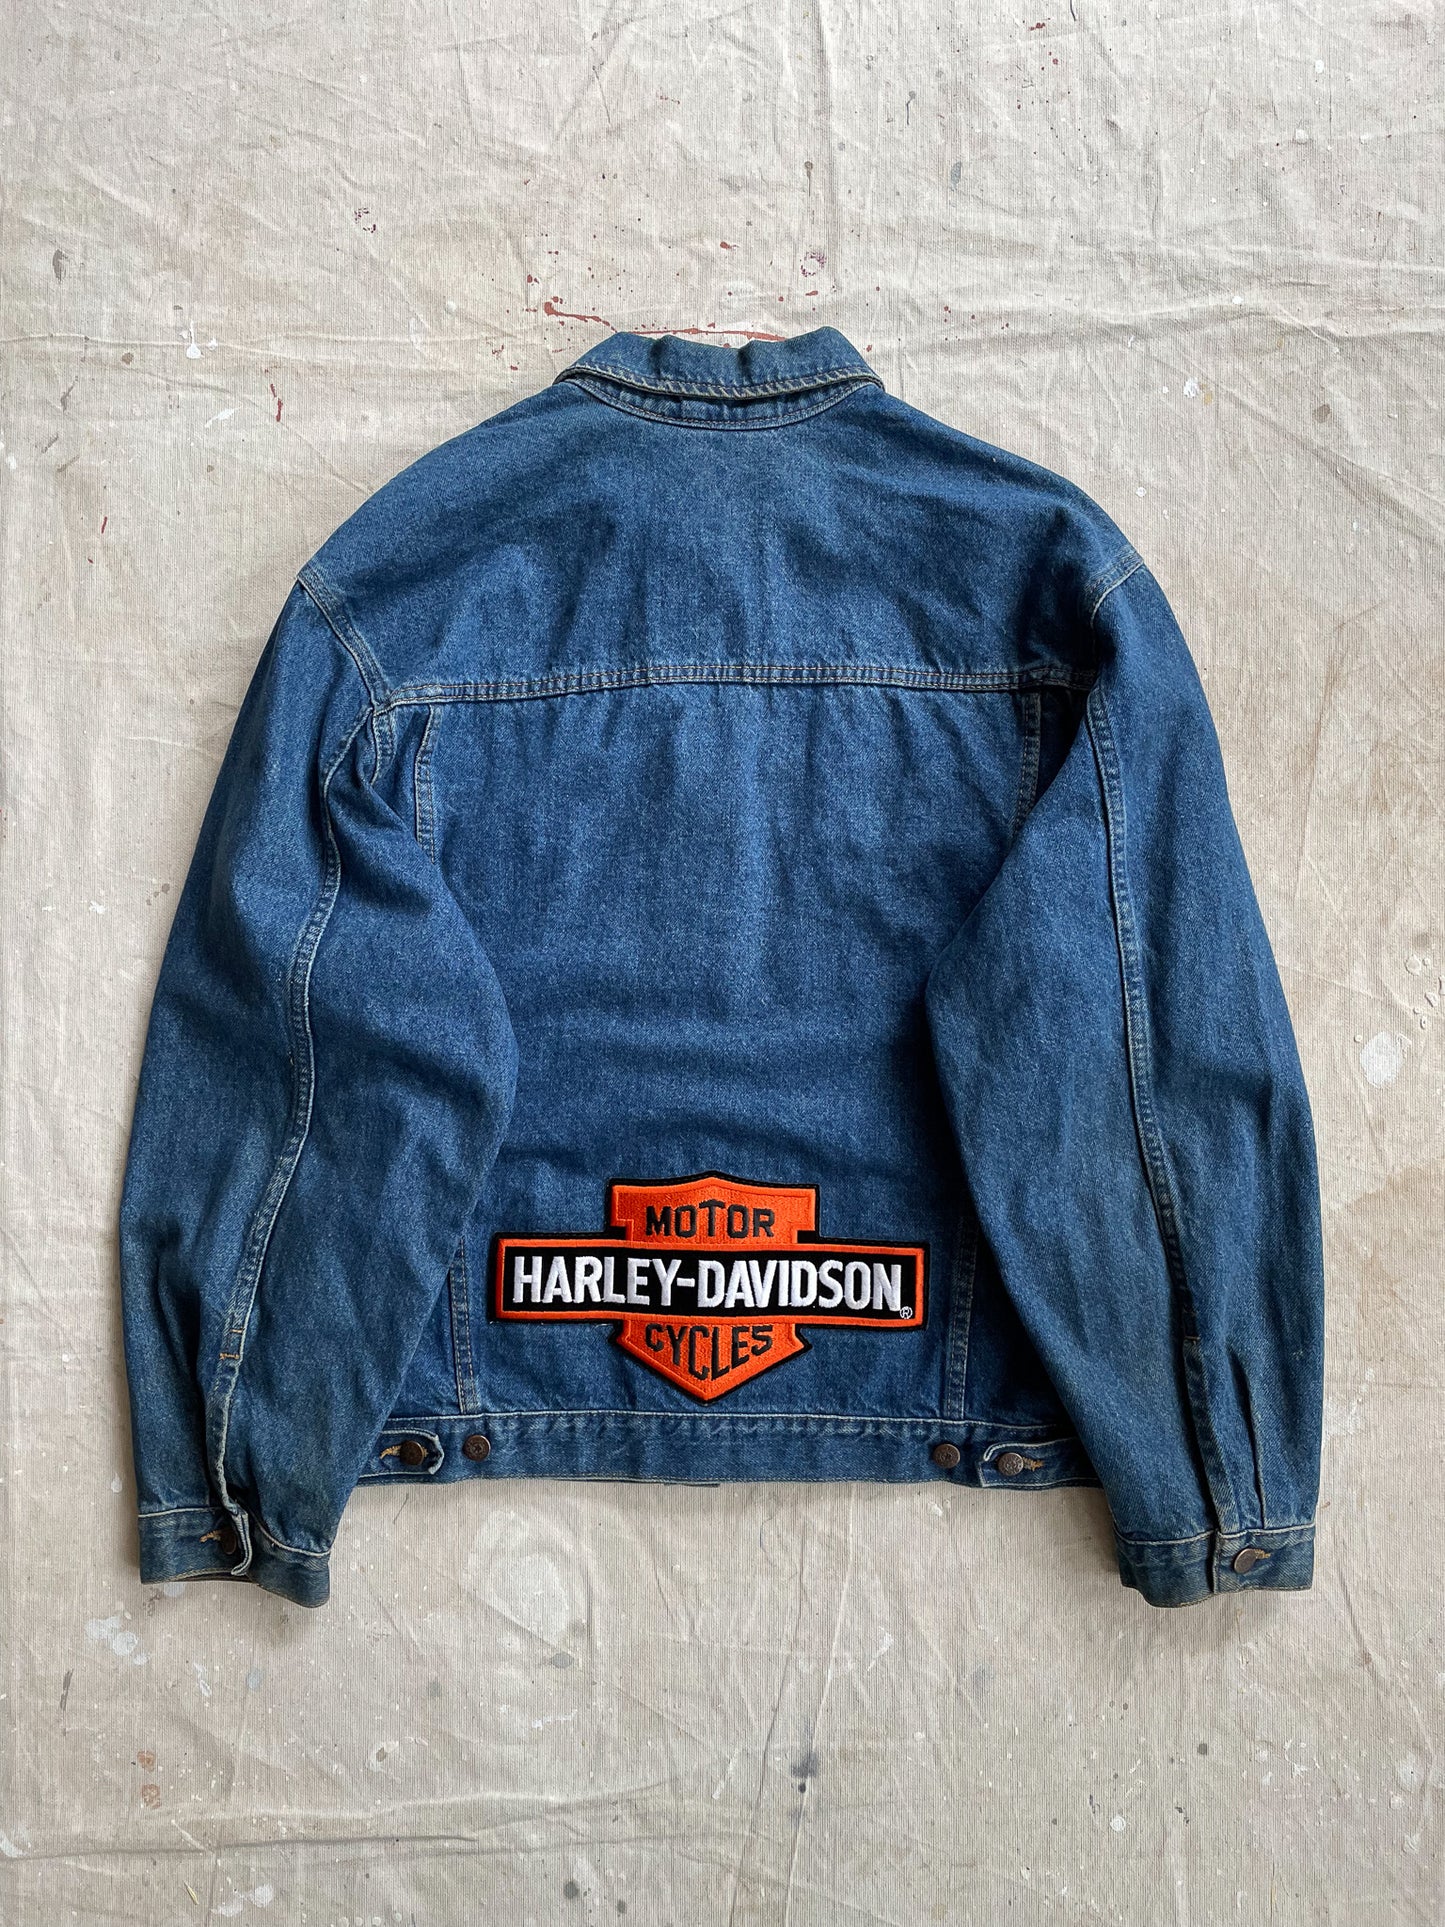 Harley-Davidson Patched Denim Jacket—[XL]